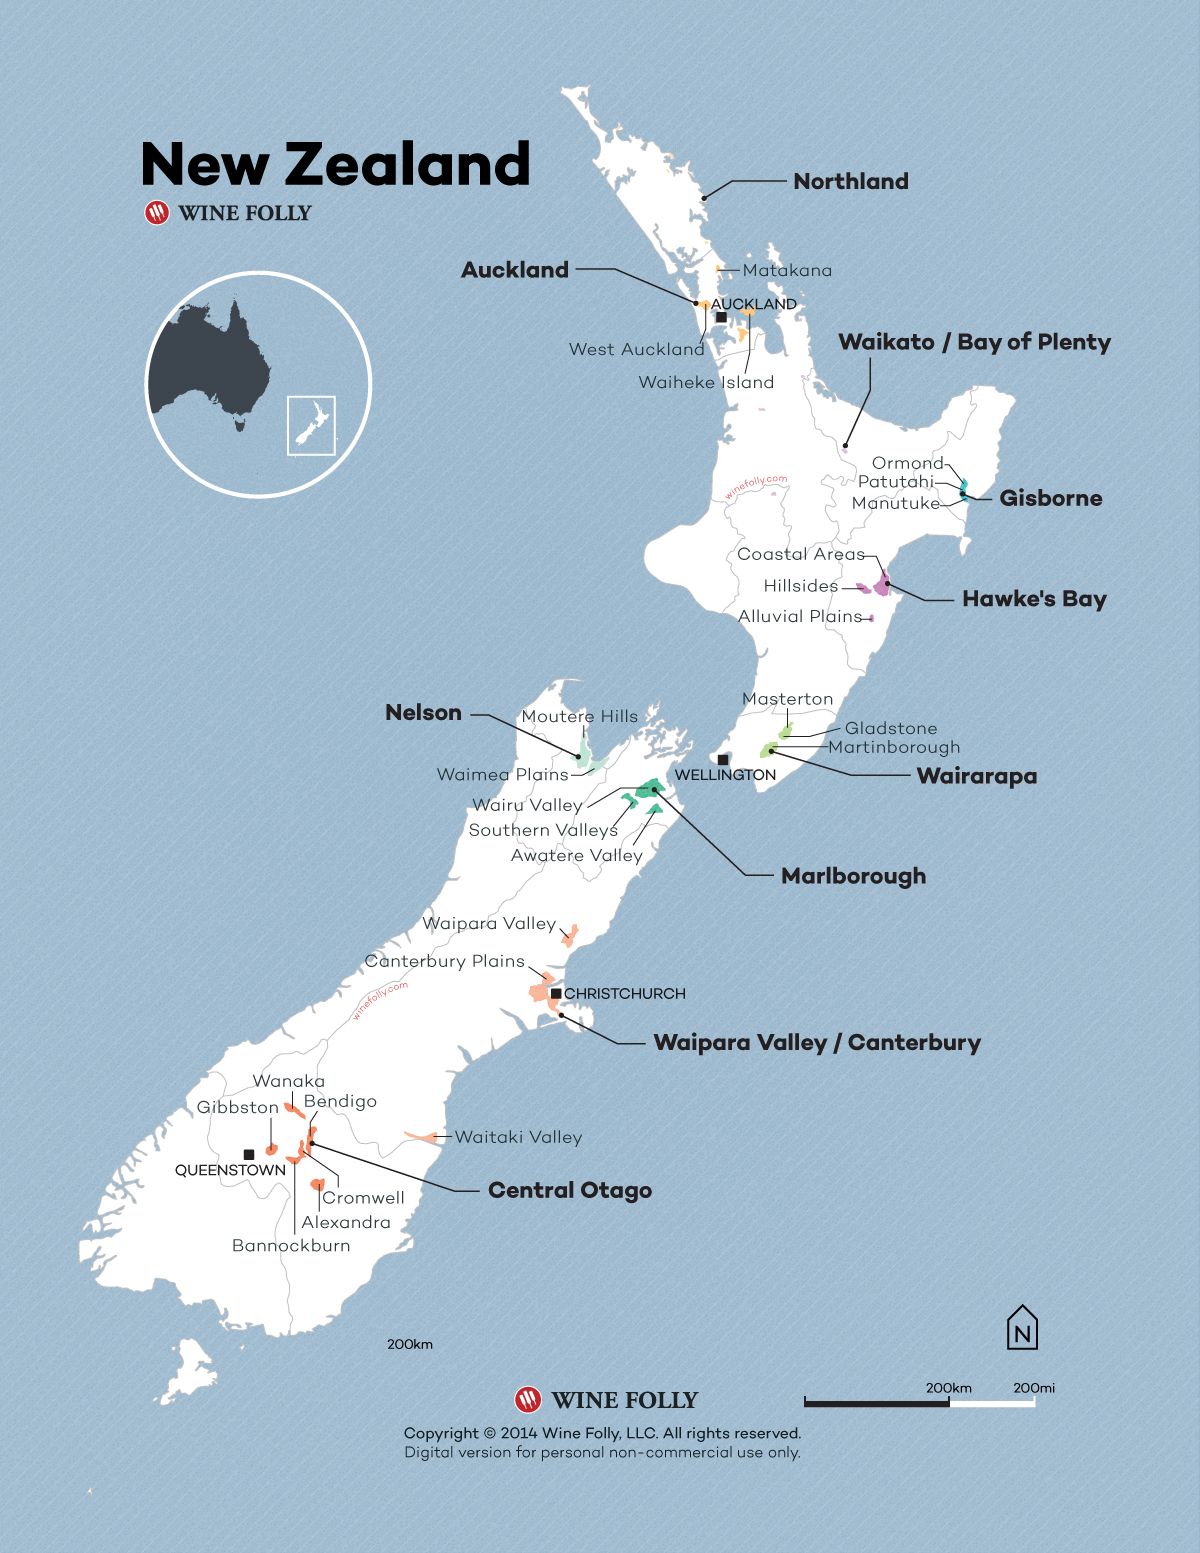 Novozelandski vinski zemljevid 2015 avtorja Wine Folly